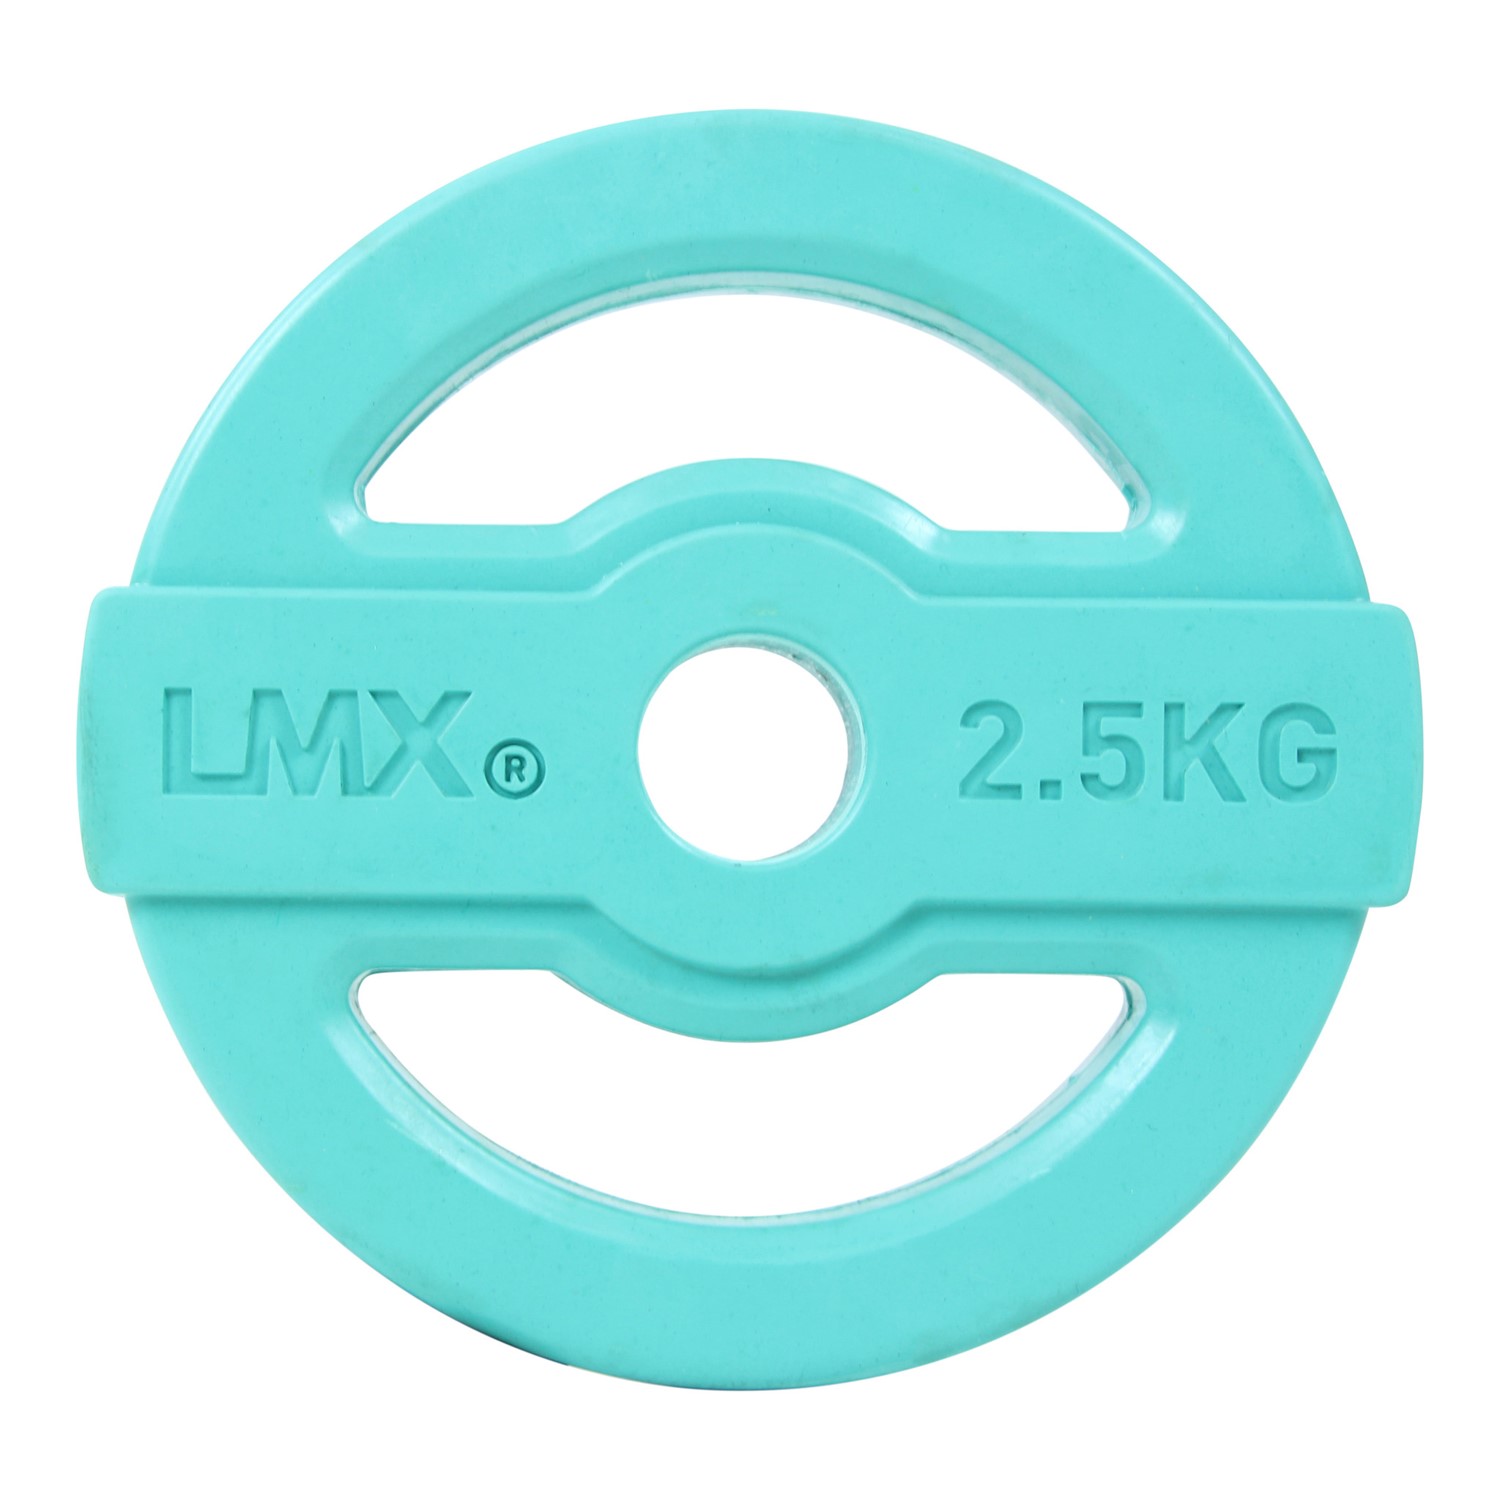 Lifemaxx Studio Pump Halterschijf - 30 mm - 2,5 kg - Blauw | Online kopen via Fitness-webshop.com